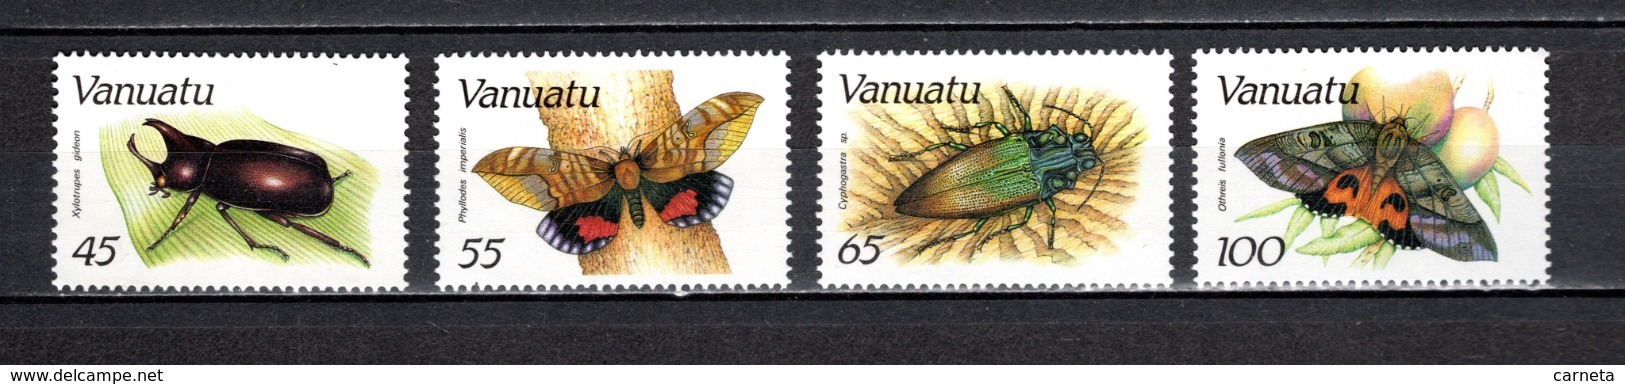 VANUATU  N° 784 à 787  NEUFS SANS CHARNIERE  COTE  25.00€  INSECTE PAPILLON  ANIMAUX - Vanuatu (1980-...)